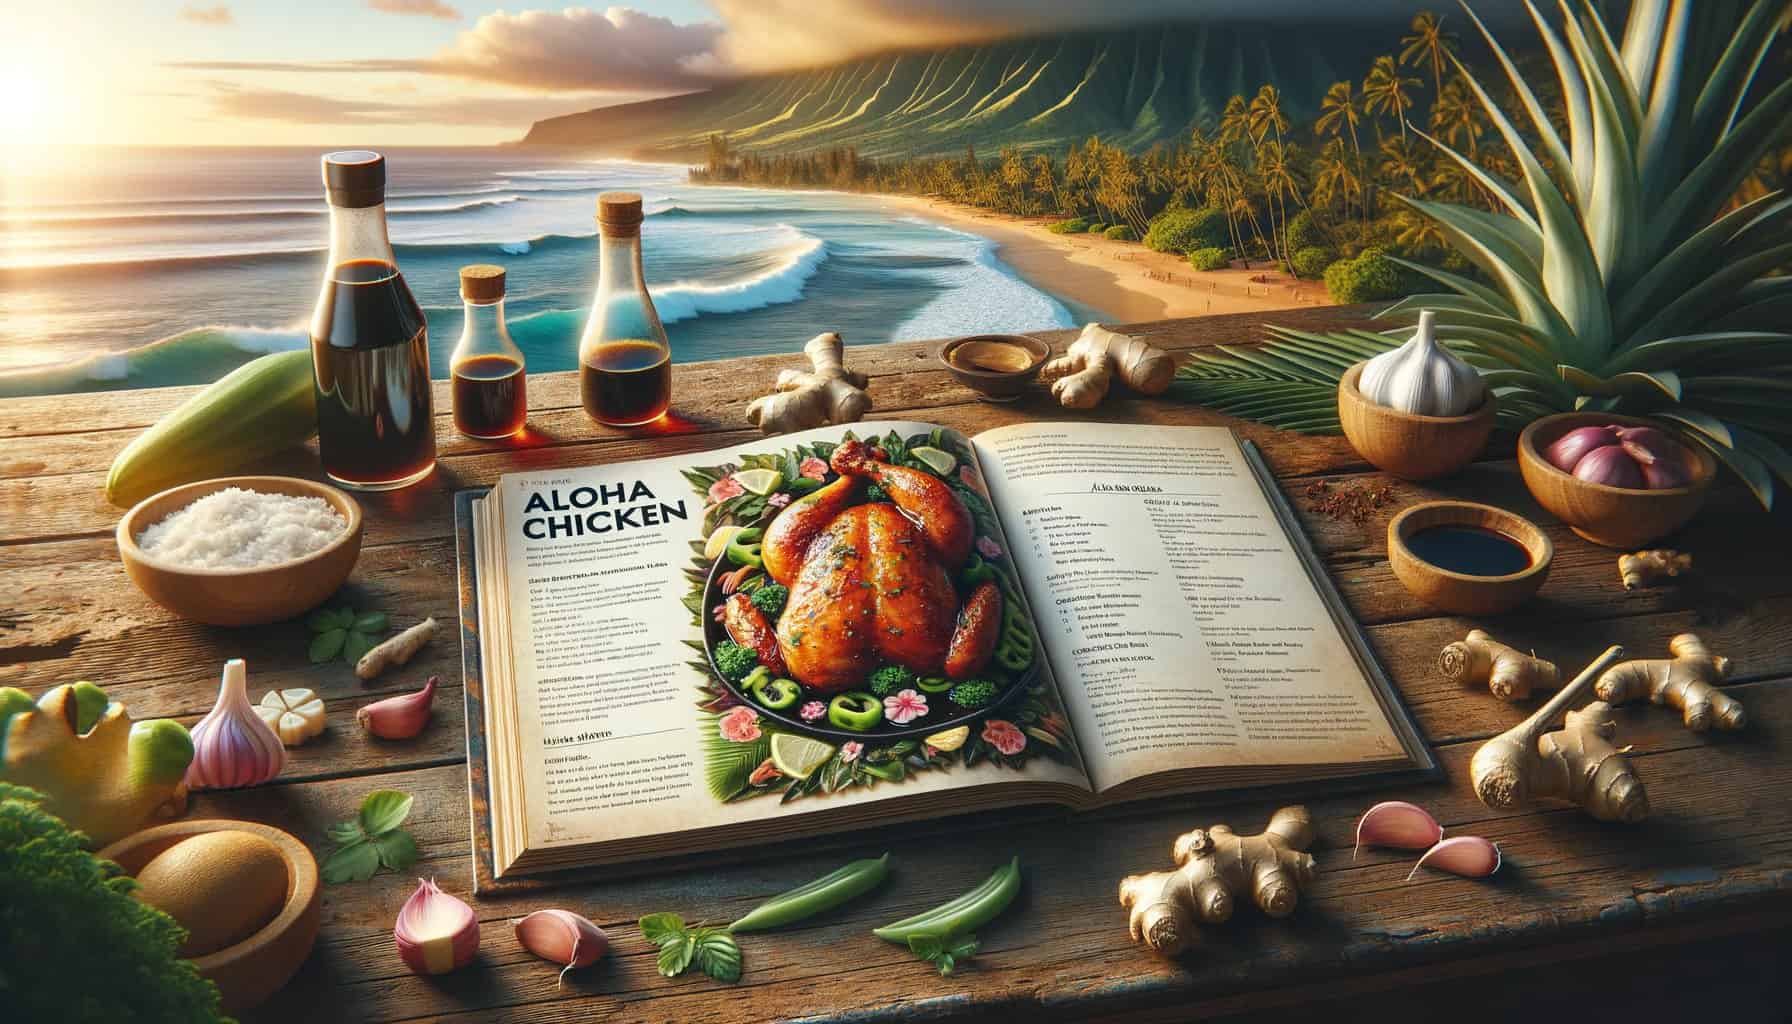 Aloha shoyu chicken recipe